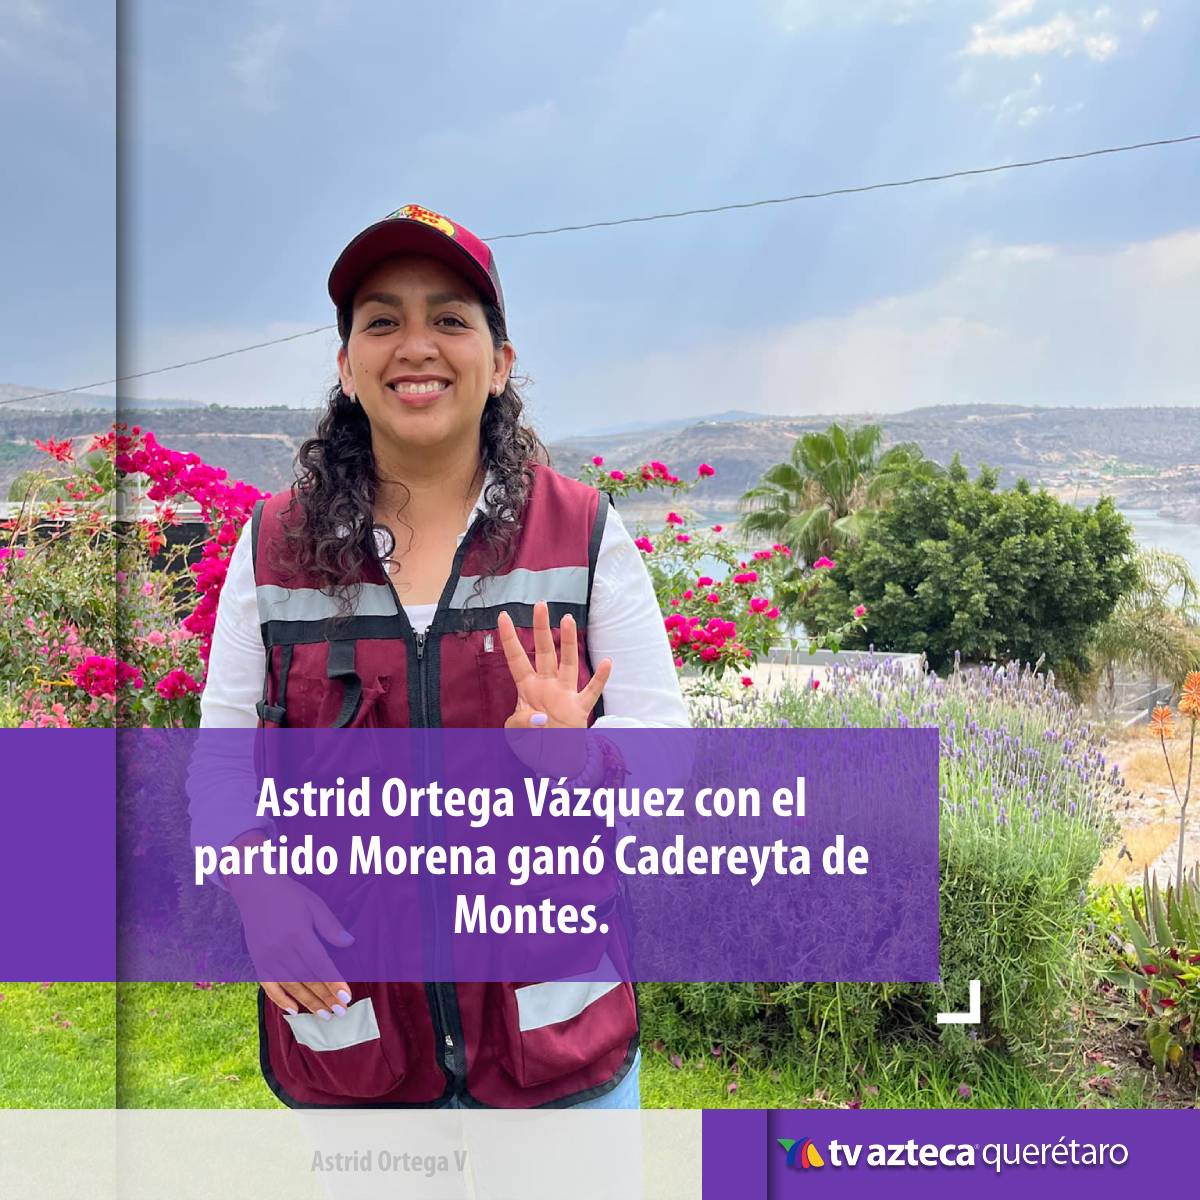 La candidata Astrid Ortega se llevó el 55.8% a favor, con un total de 18,250 botos convirtiéndose en la nueva presidenta de #CadereytadeMontes.

#TvAztecaQuerétaro #Elecciones2024 #EleccionesQuerétaro